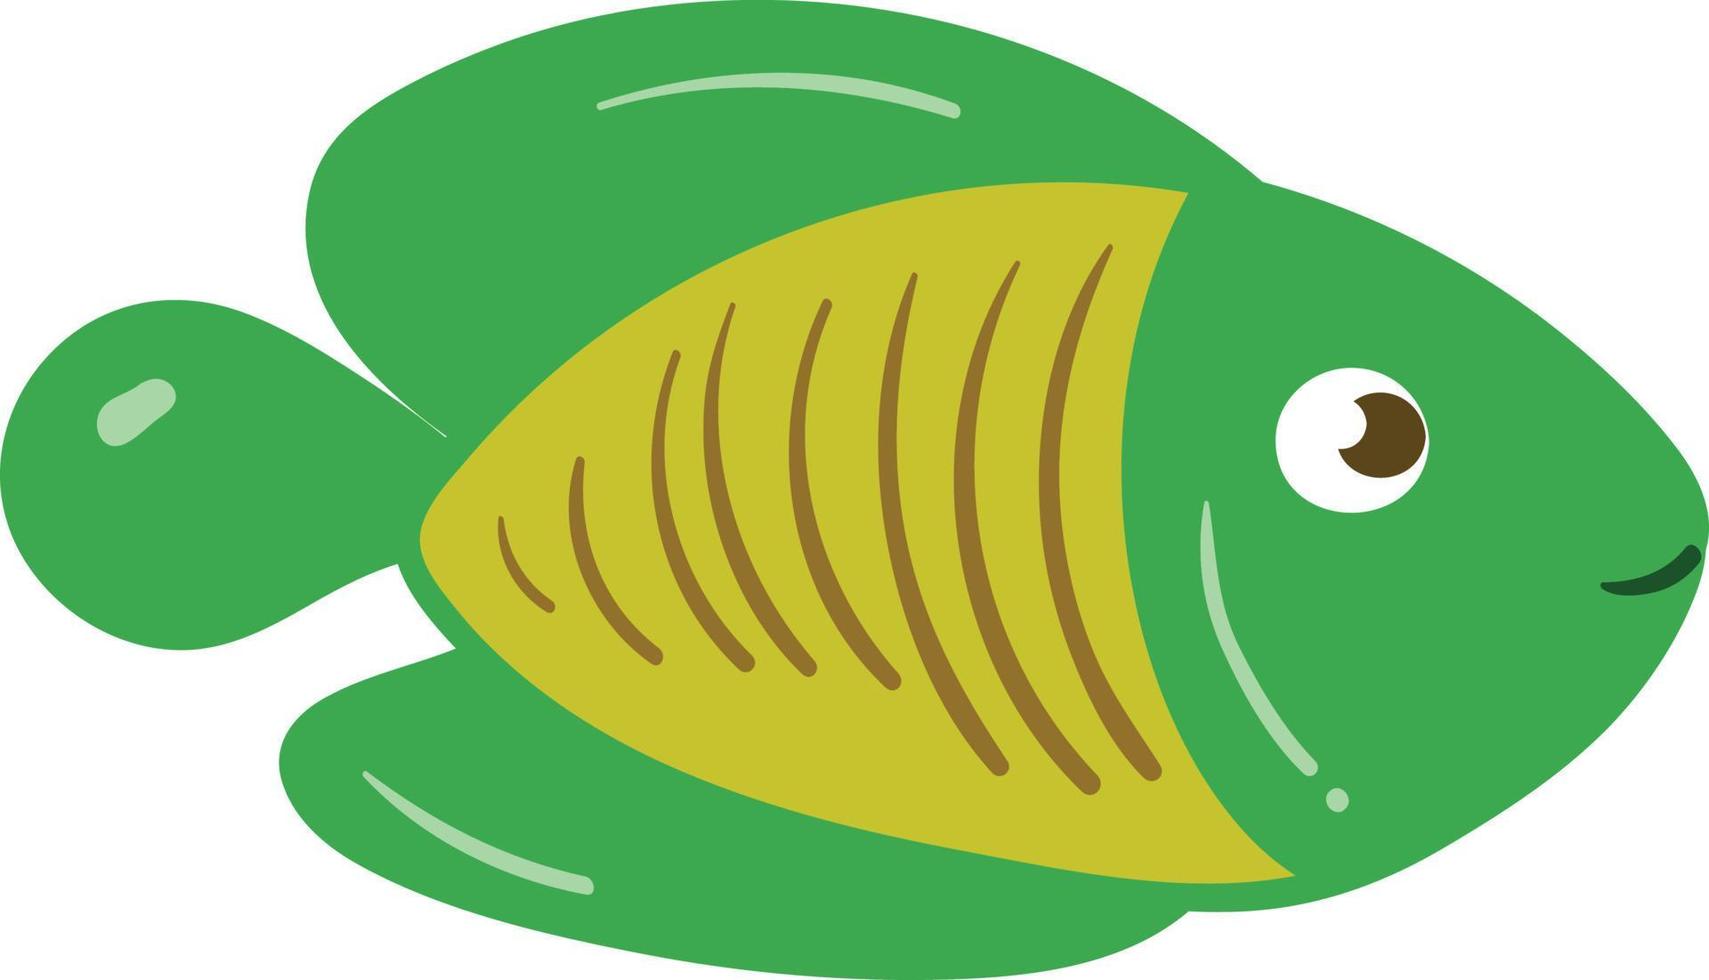 pesce verde con squame gialle. illustrazione vettoriale di carino pesce tropicale verde.